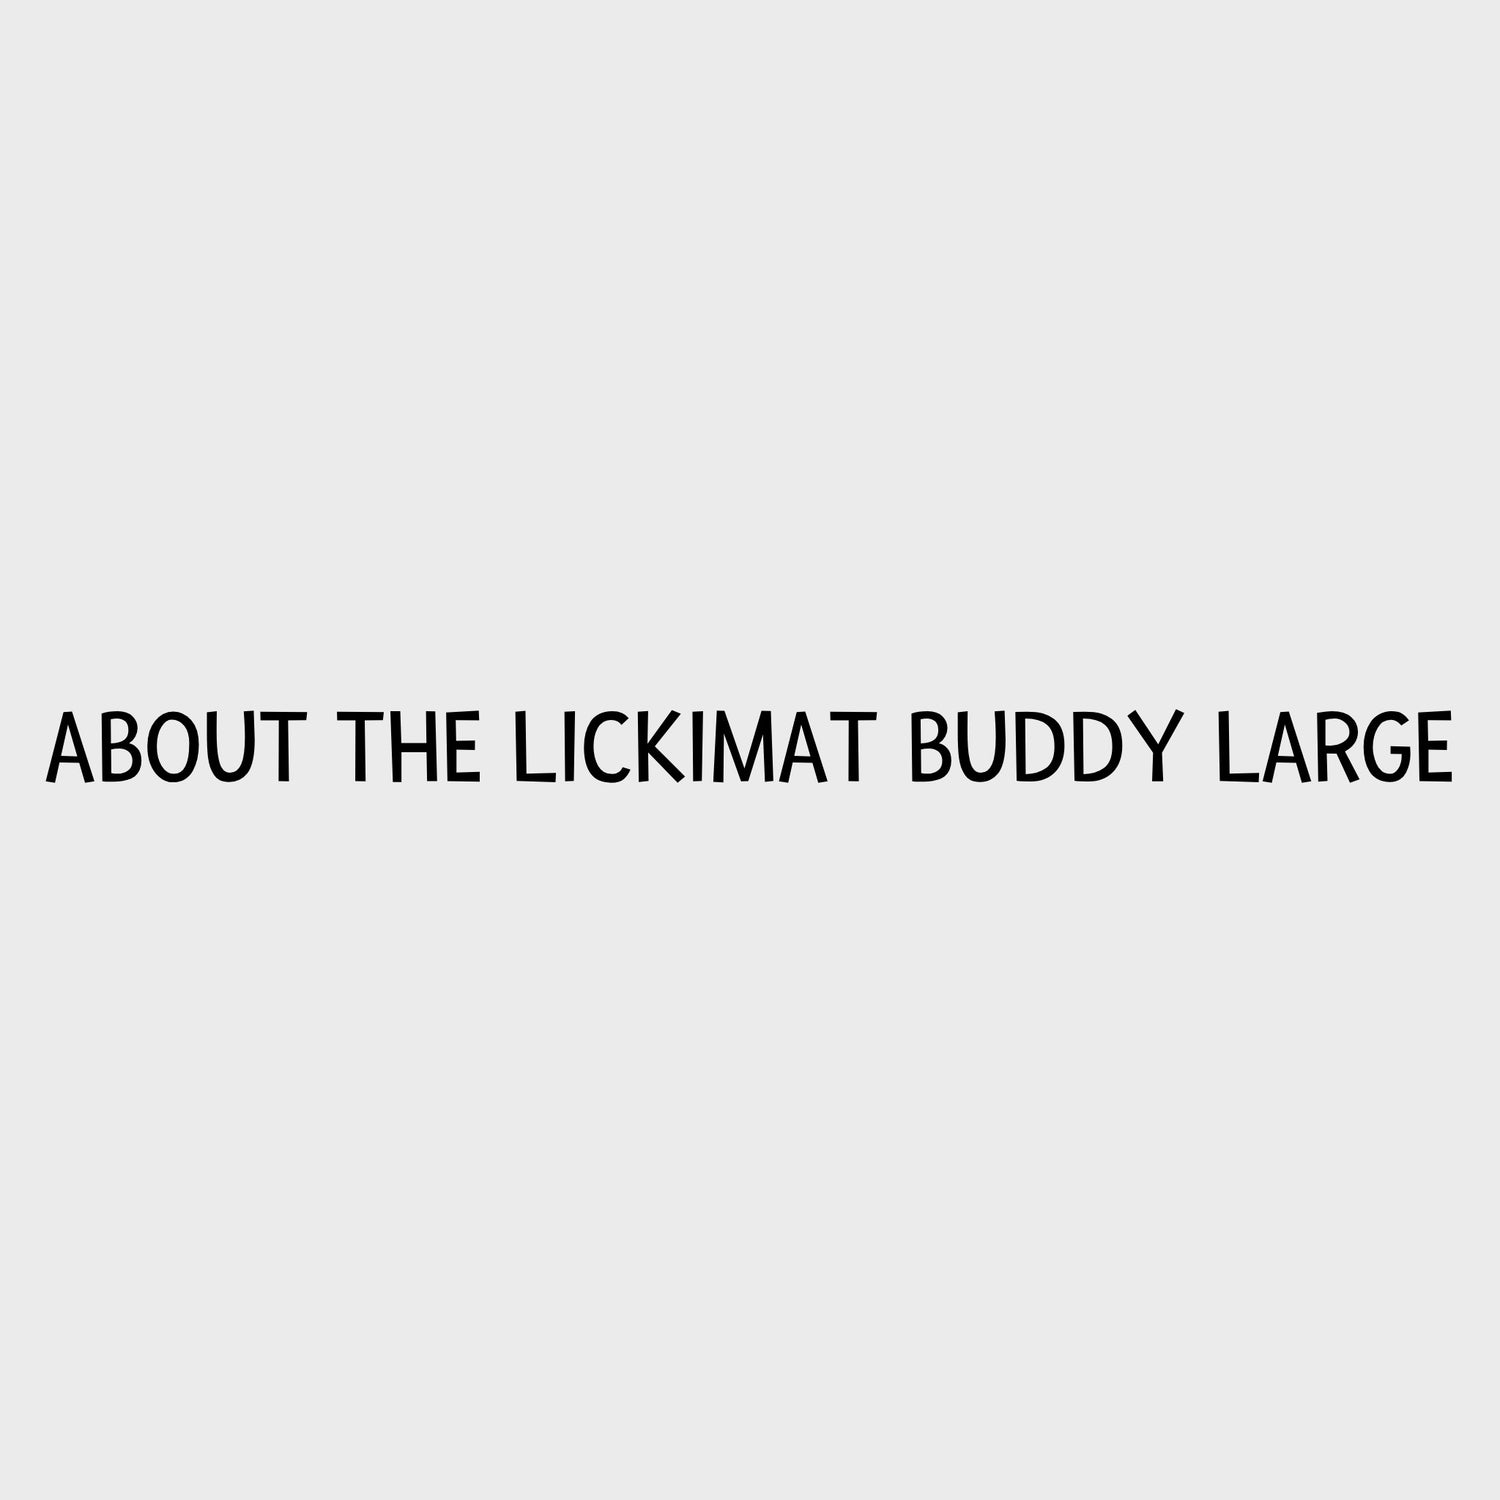 Video - LickiMat Buddy Large